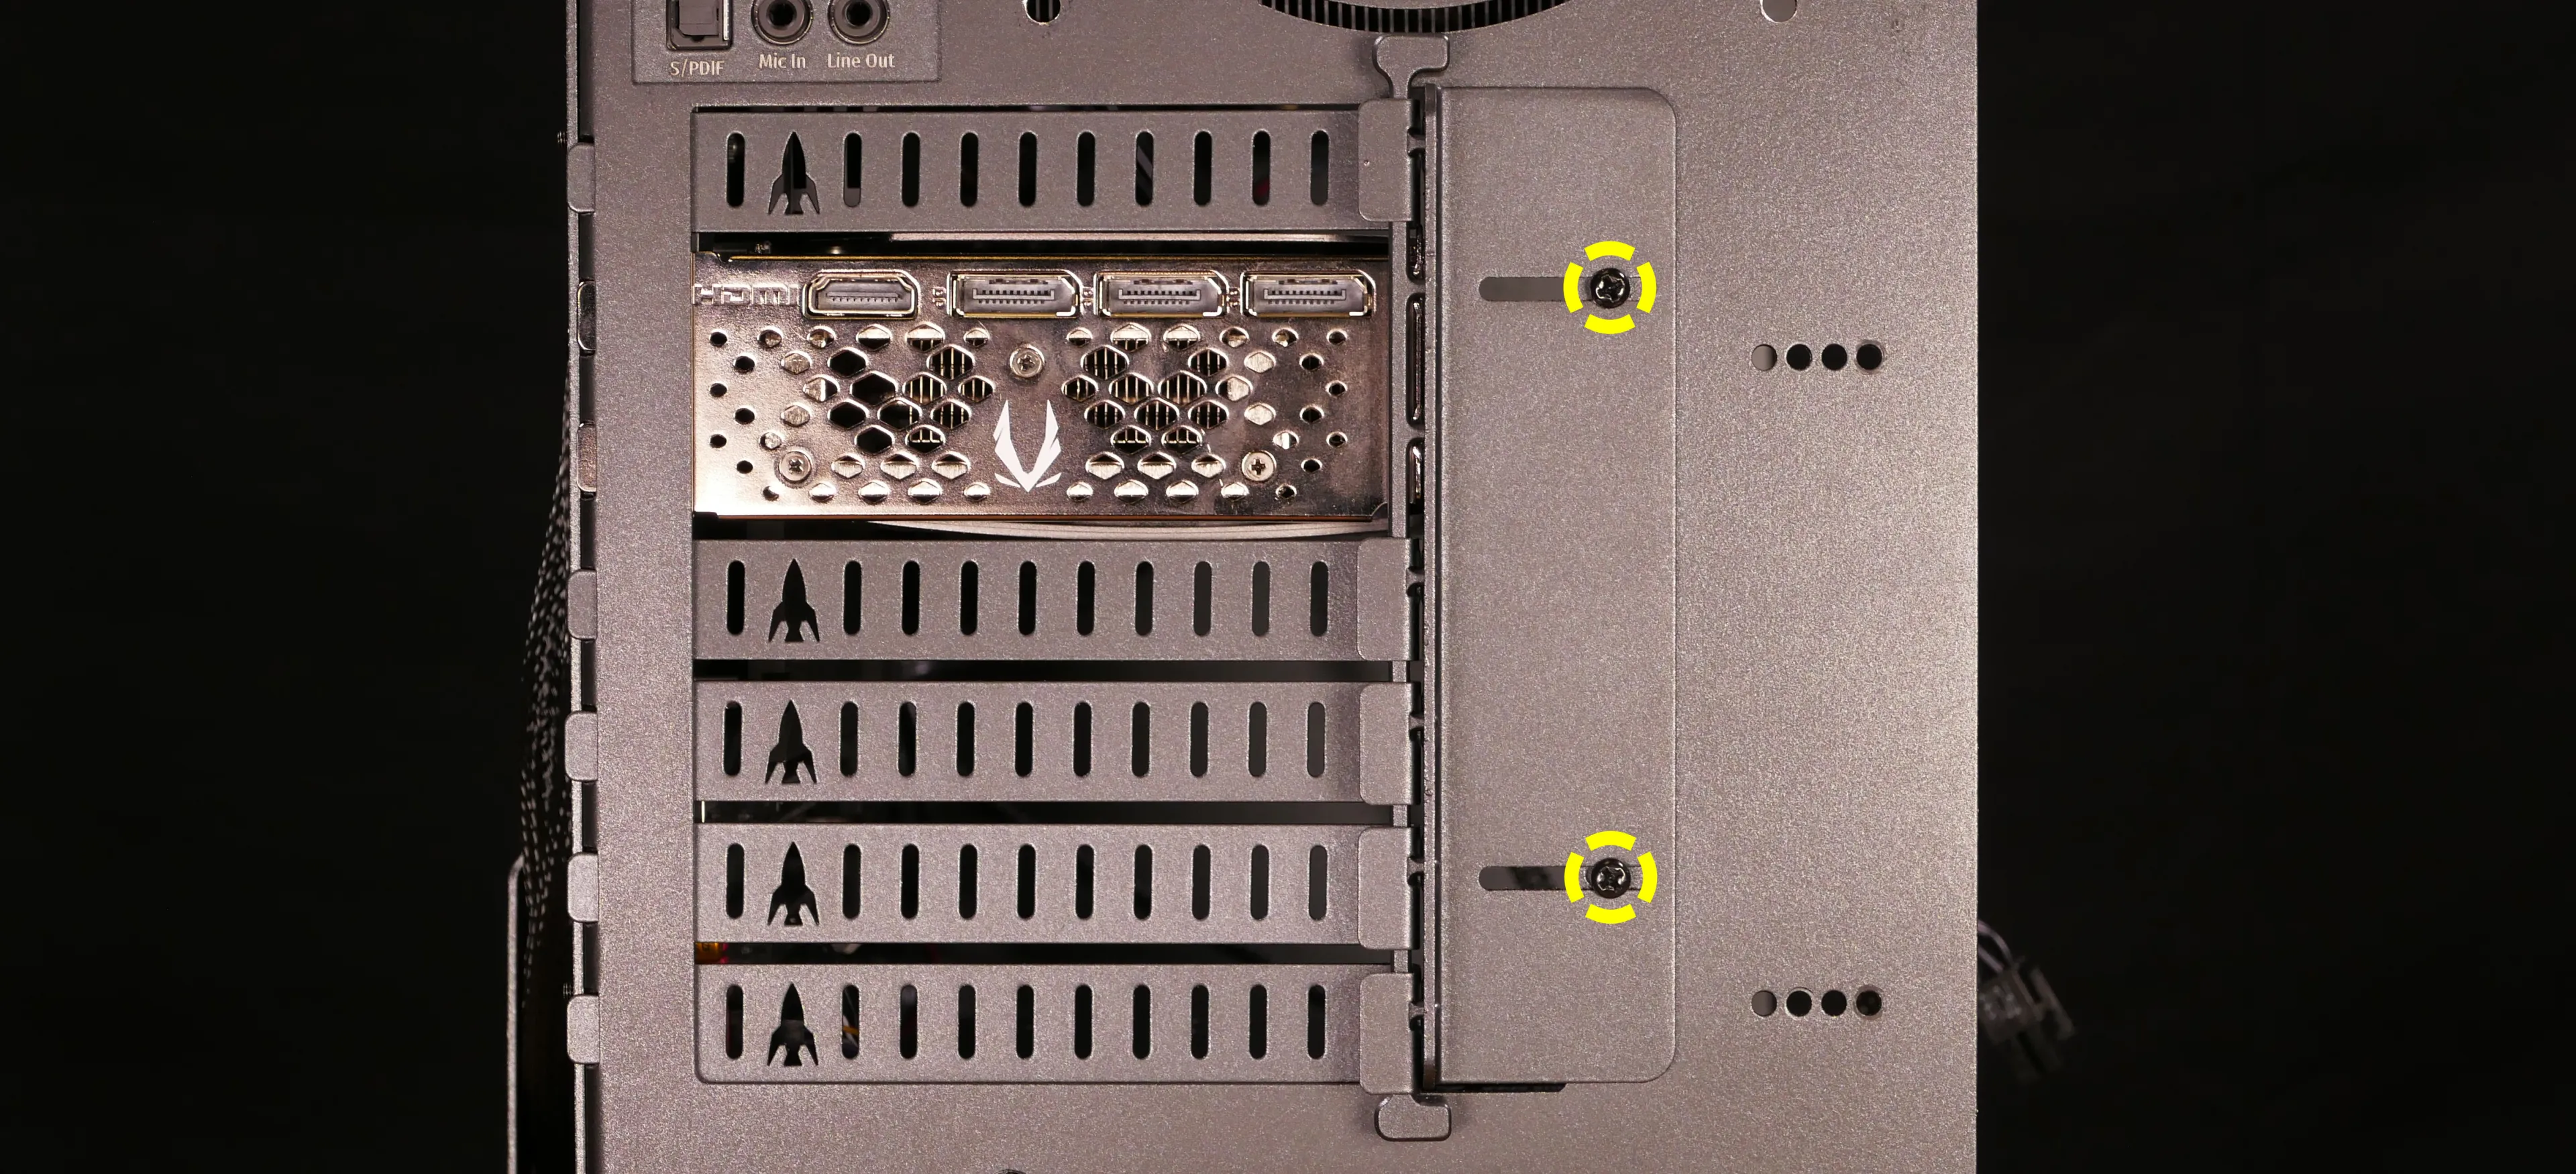 PCIe bracket screws